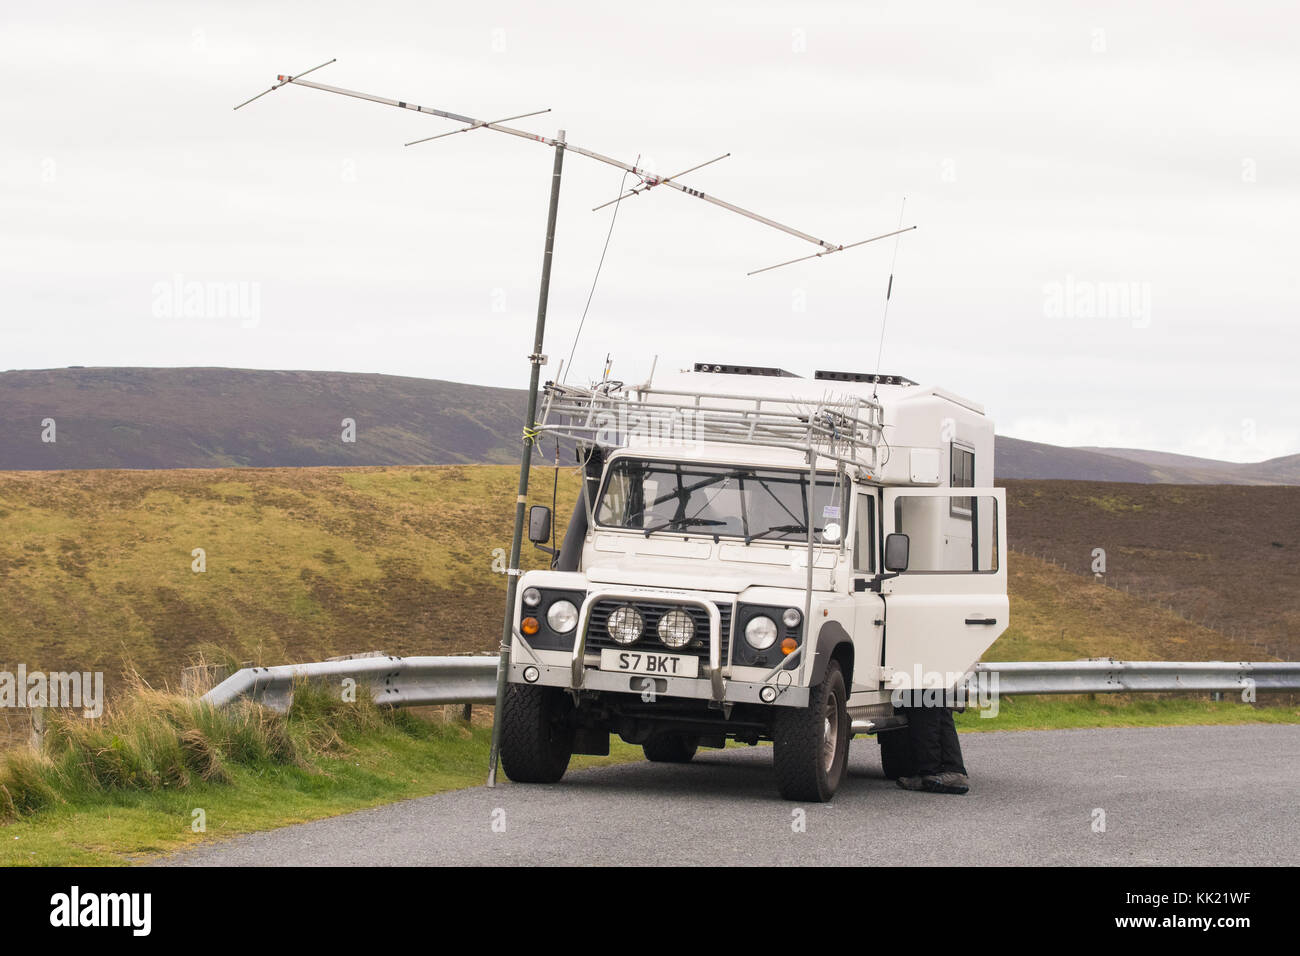 Amateur de radio HAM dans un endroit éloigné, Shetland Islands, Écosse, Royaume-Uni Banque D'Images